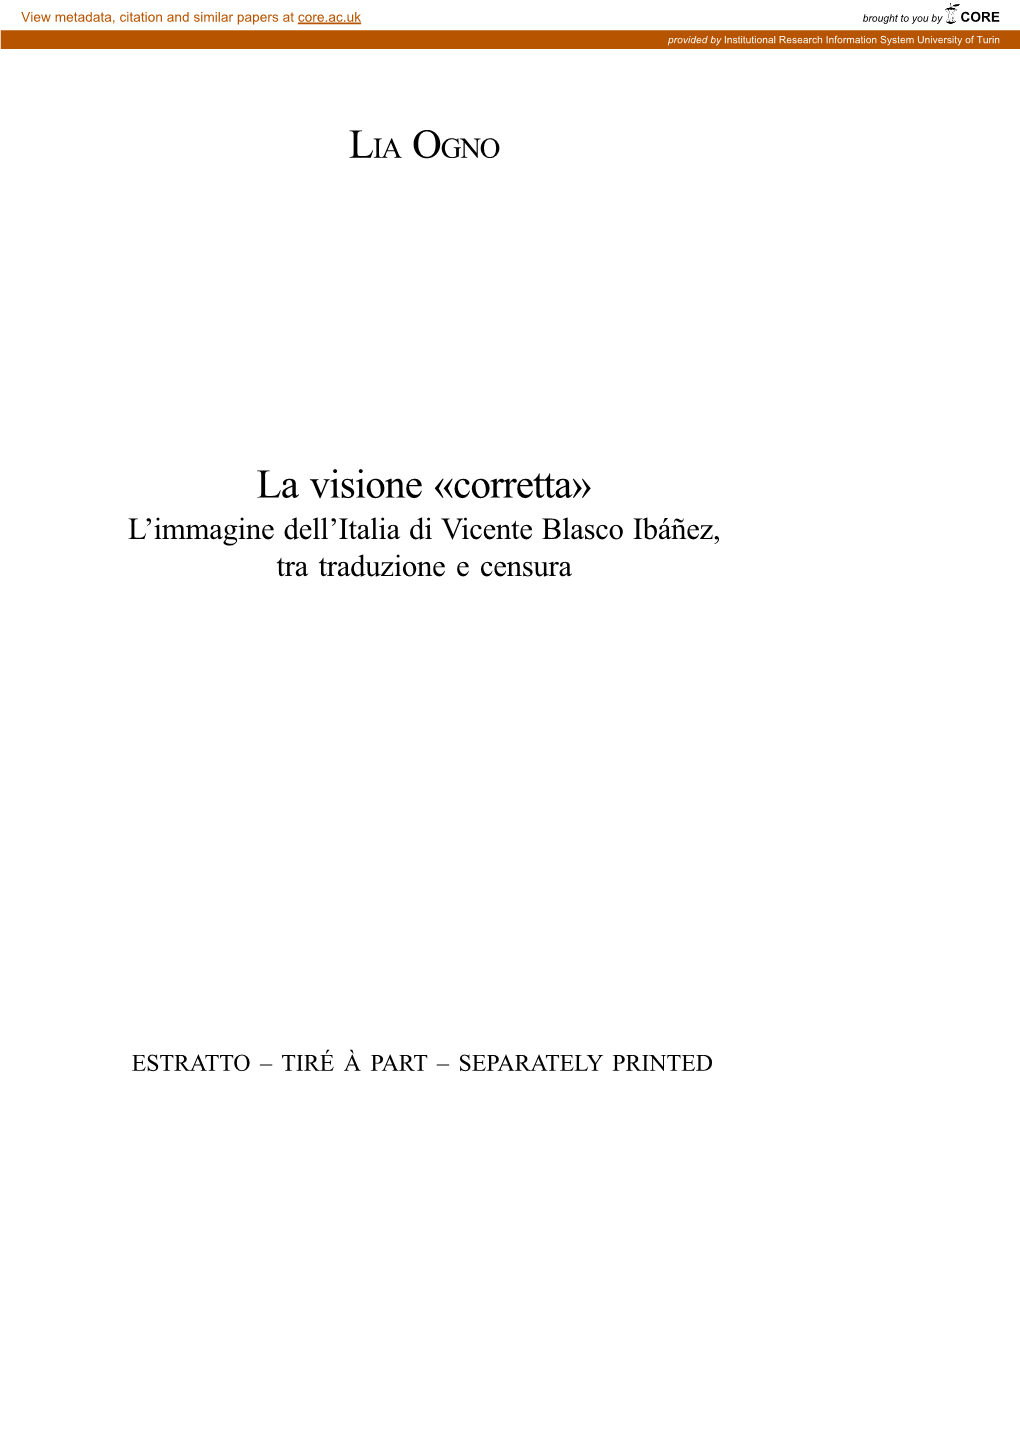 La Visione «Corretta» L’Immagine Dell’Italia Di Vicente Blasco Ibáñez, Tra Traduzione E Censura